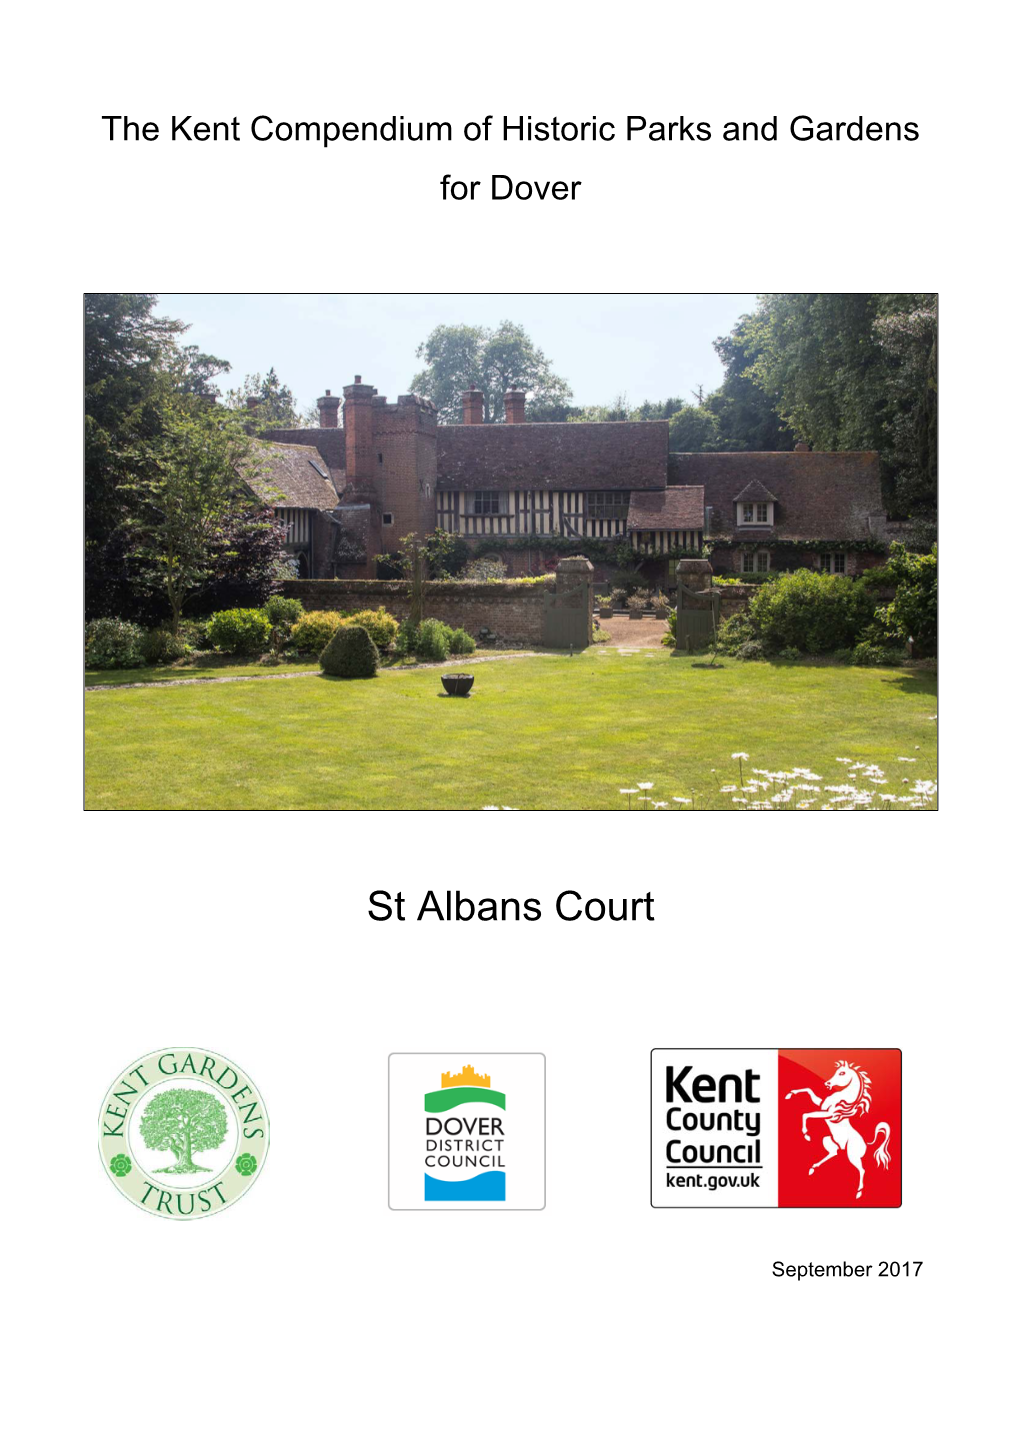 St Albans Court